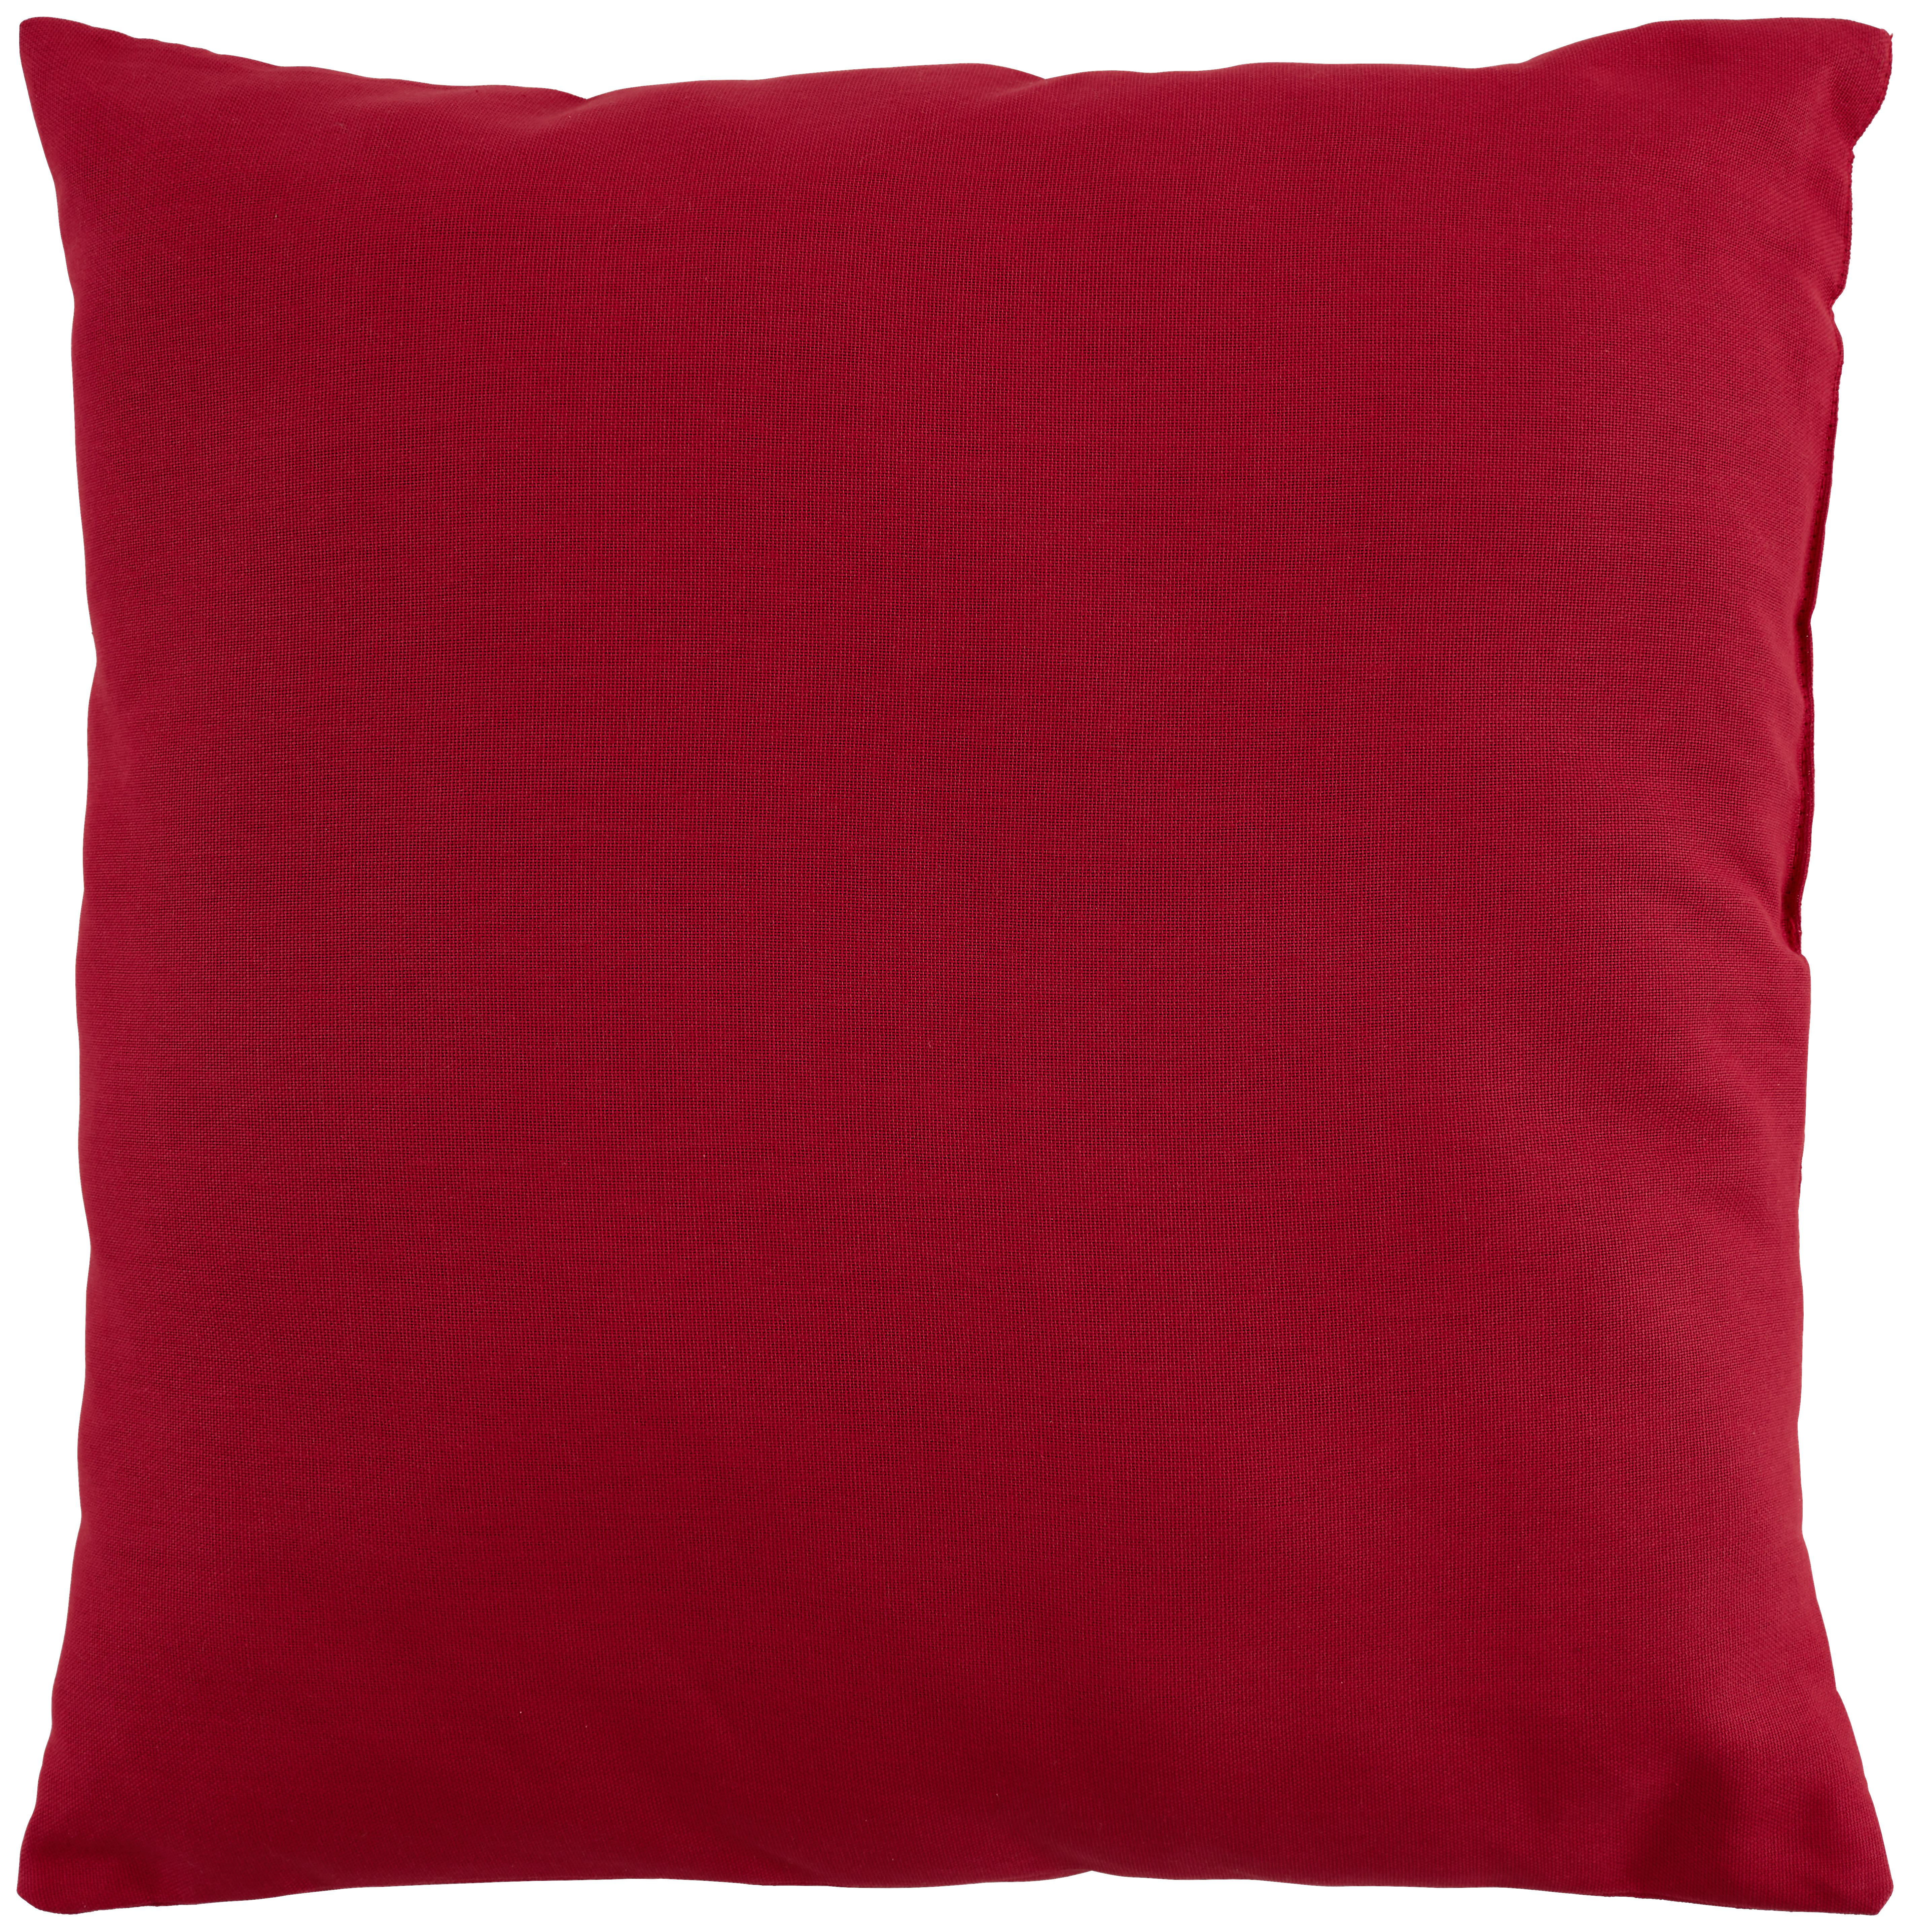 Zierkissen Verena 48x48 cm Baumwolle Rot - Rot, KONVENTIONELL, Textil (48/48cm) - Ondega